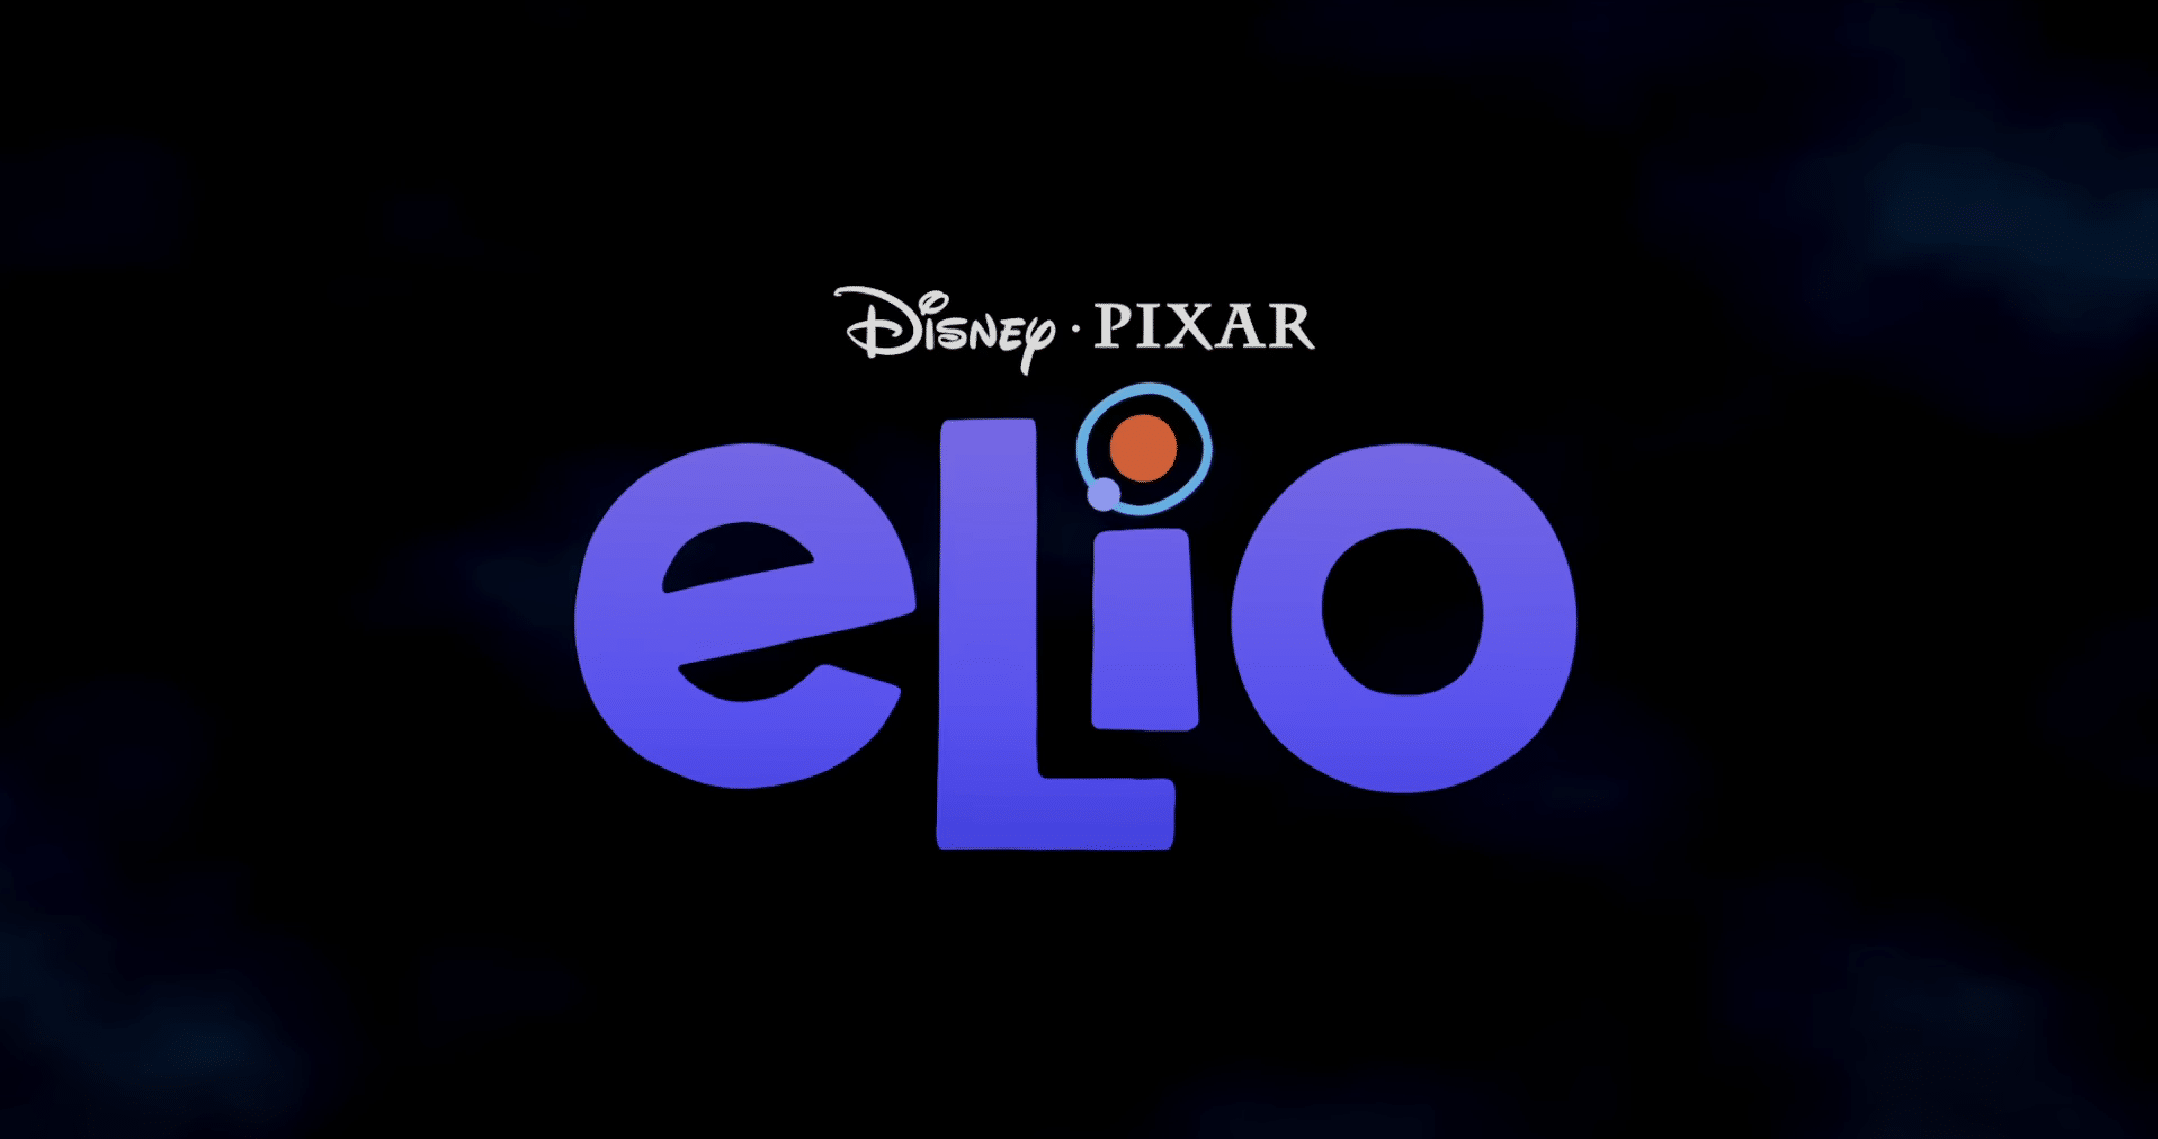 Elio - Pixar